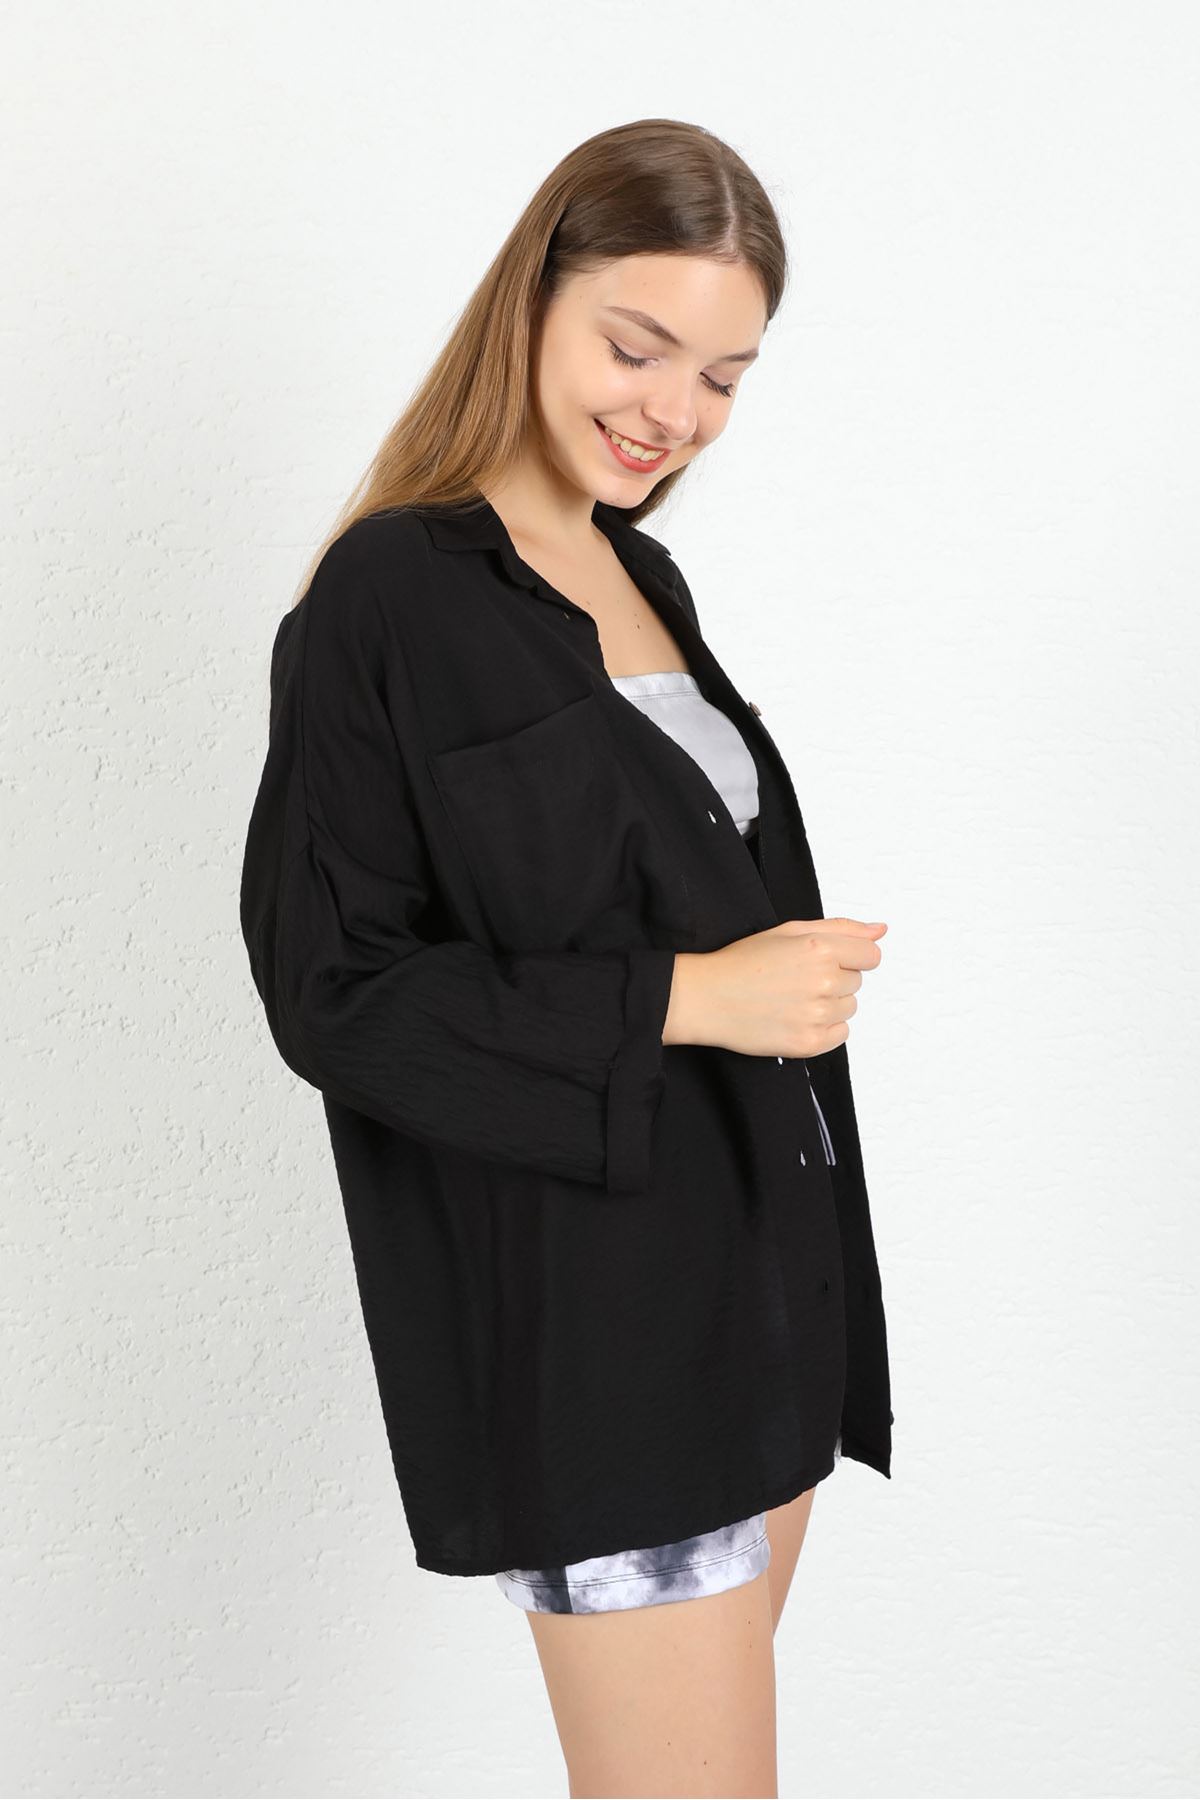 Аэробин Ткань длинный рукав оверсайз Женская рубашка - Чёрный